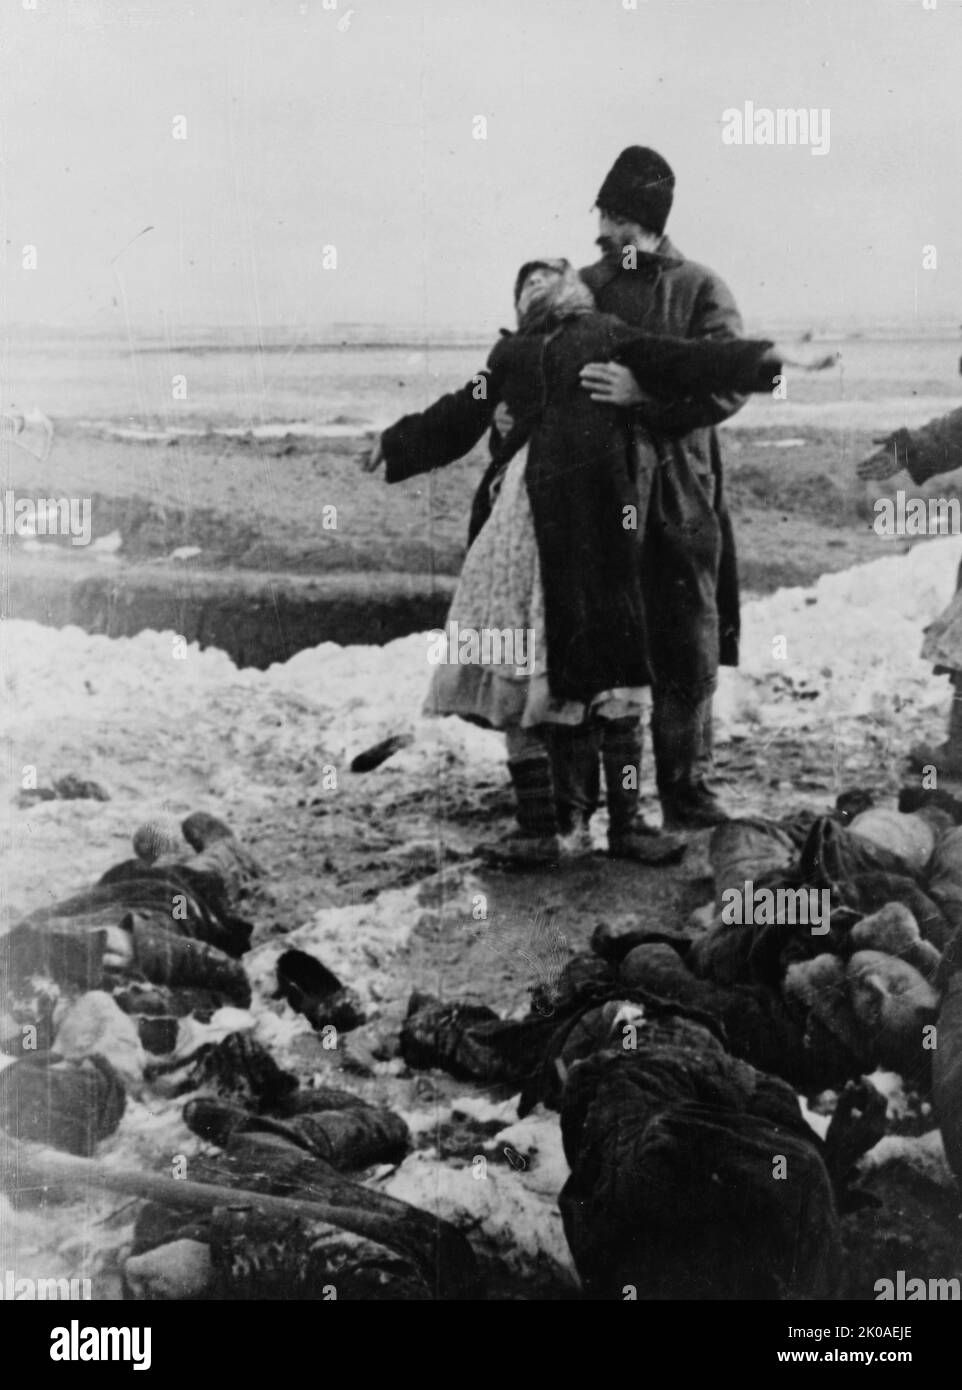 S. Afansyeva di Kerch piange la morte del figlio di 18 anni, che fu ucciso dai tedeschi quando furono costretti ad evacuare la città nel febbraio 1942. Nel 1942 i tedeschi occuparono nuovamente la città. L'Armata Rossa perse oltre 160.000 uomini, uccisi o presi POW nella Battaglia della Penisola Kerch Foto Stock